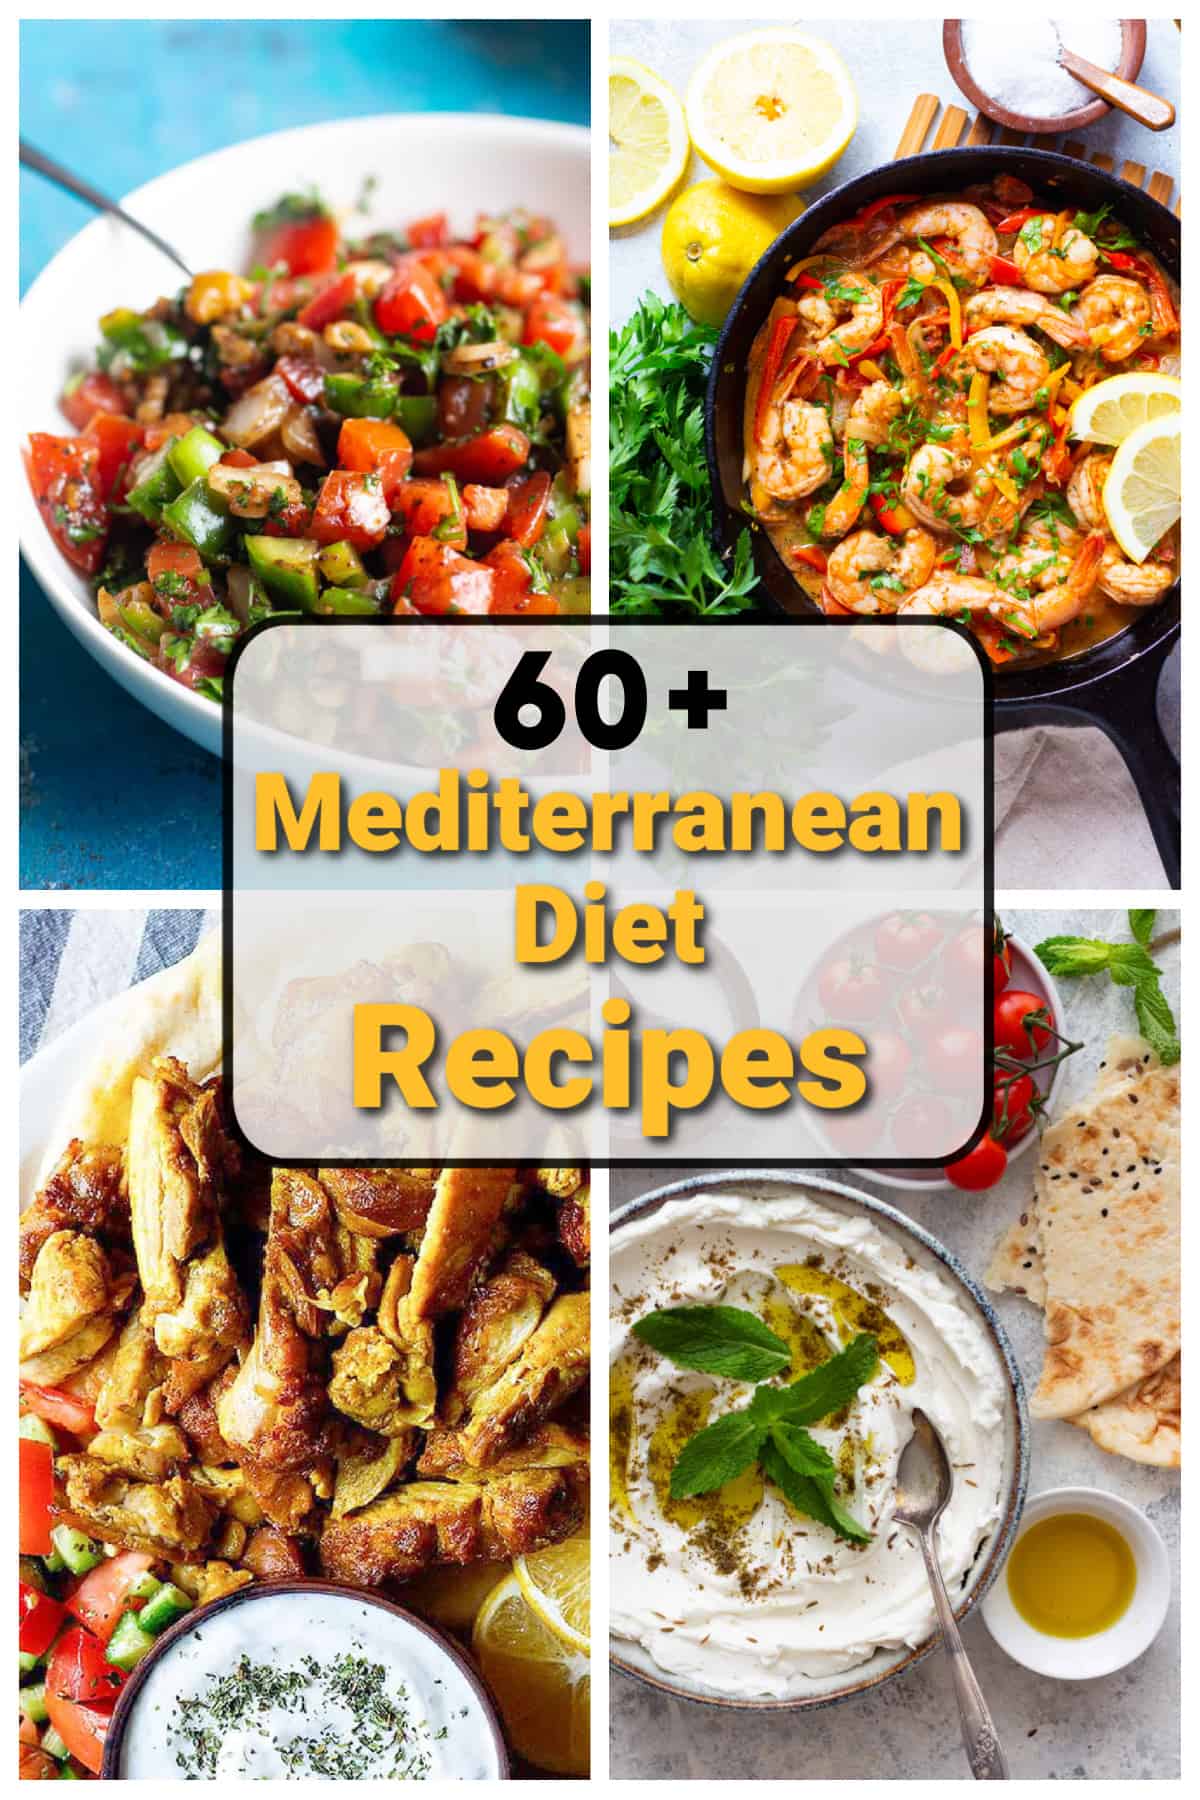 Mediterranean Diet and Healthy Mediterranean One-Pot Meals